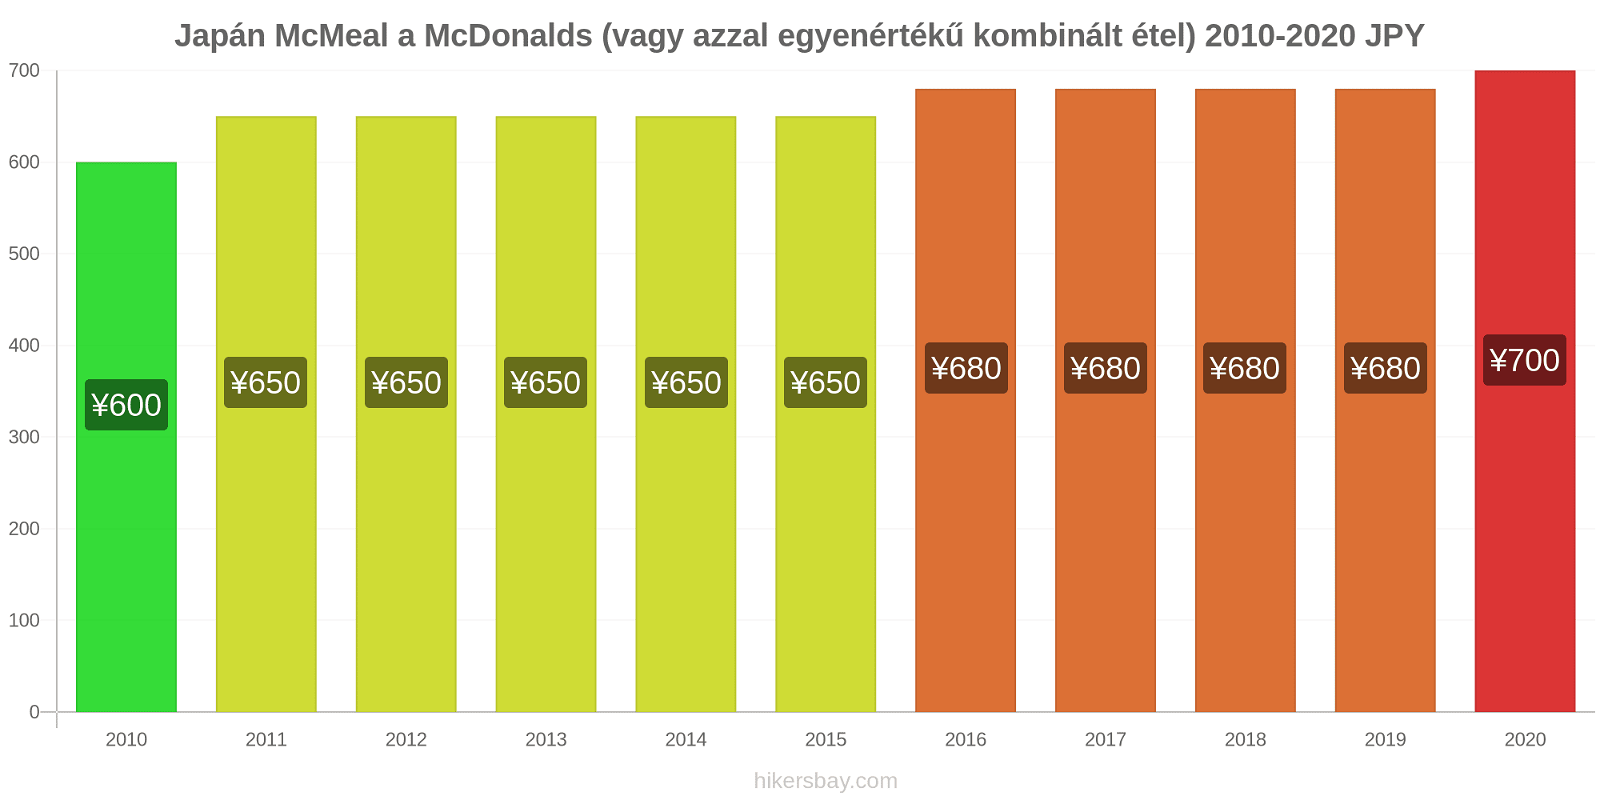 Japán árváltozások McMeal a McDonalds (vagy azzal egyenértékű kombinált étel) hikersbay.com